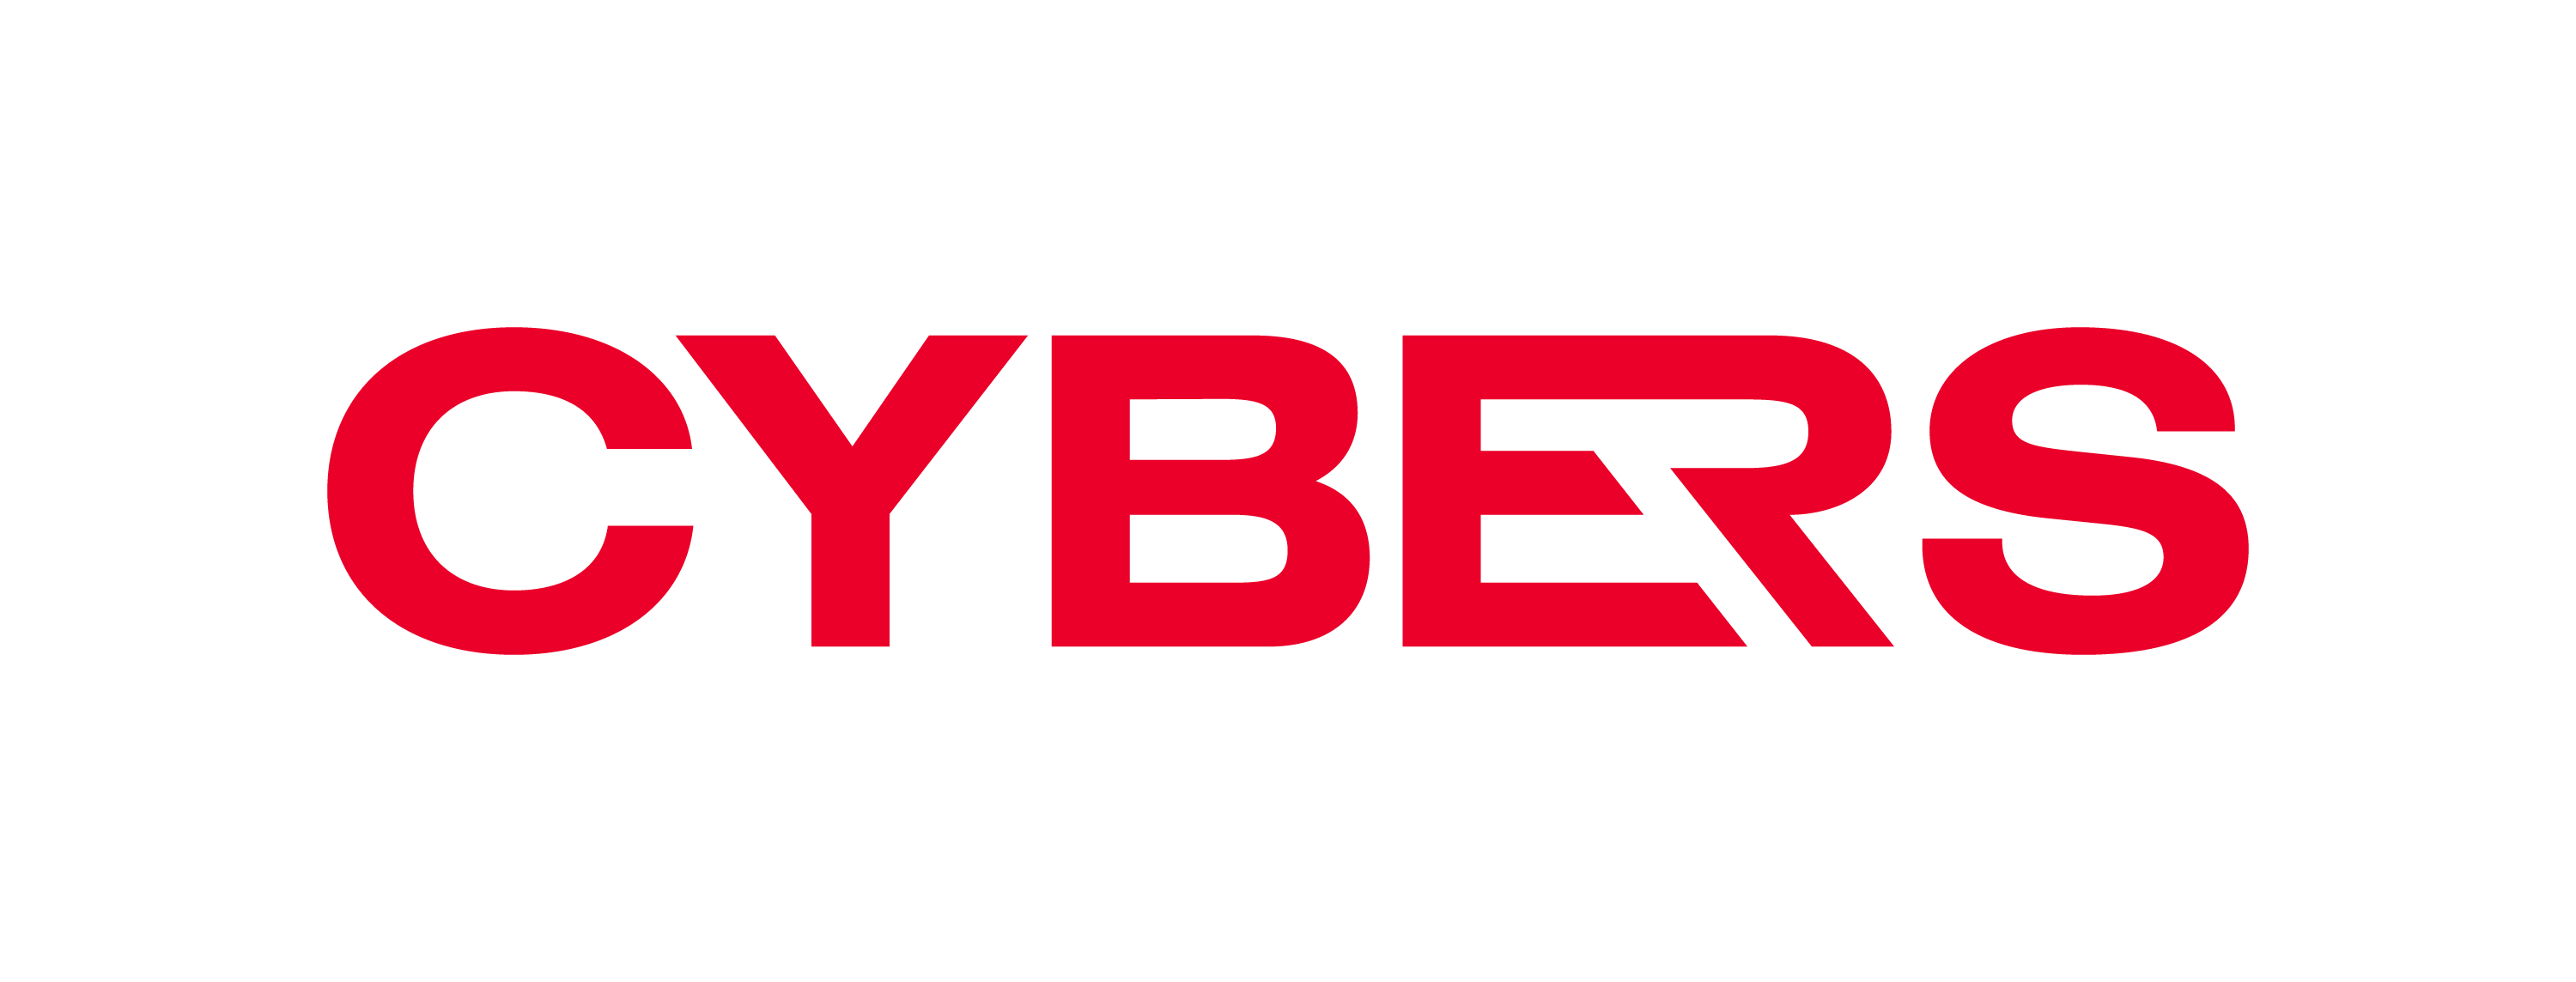 Cybers